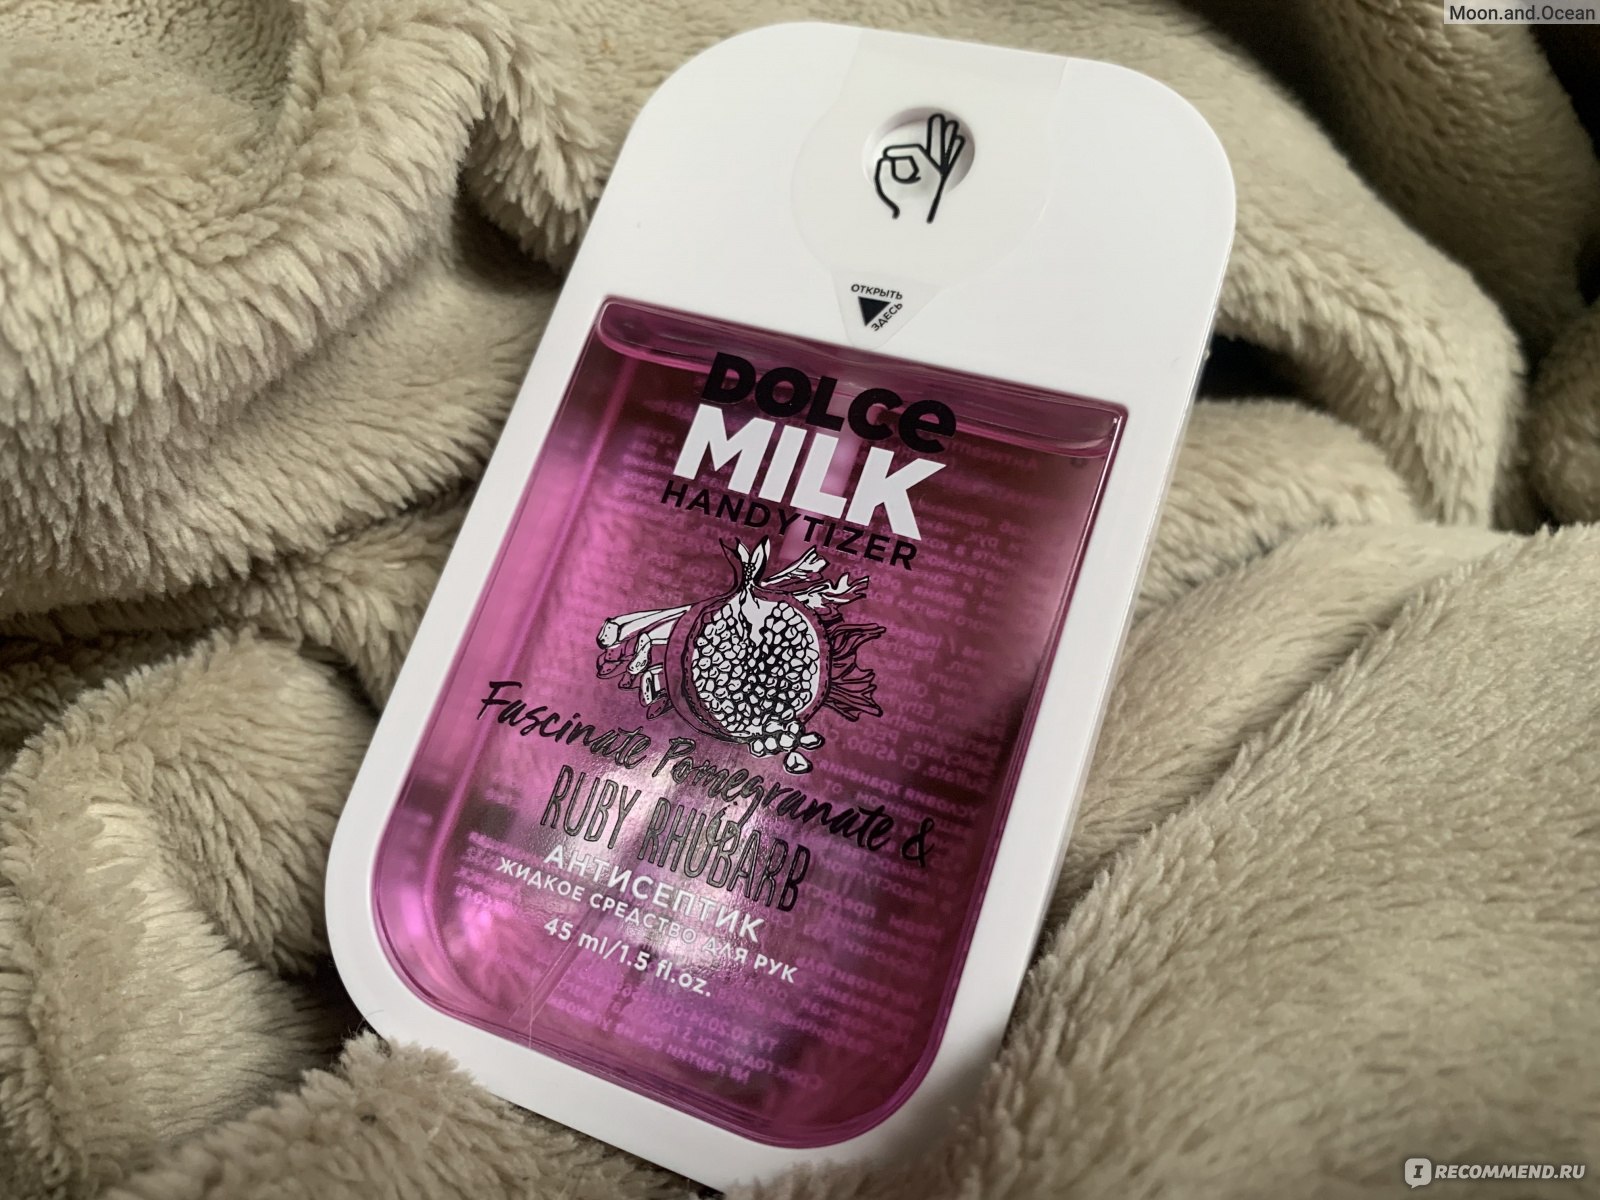 Антисептик от dolce milk фото